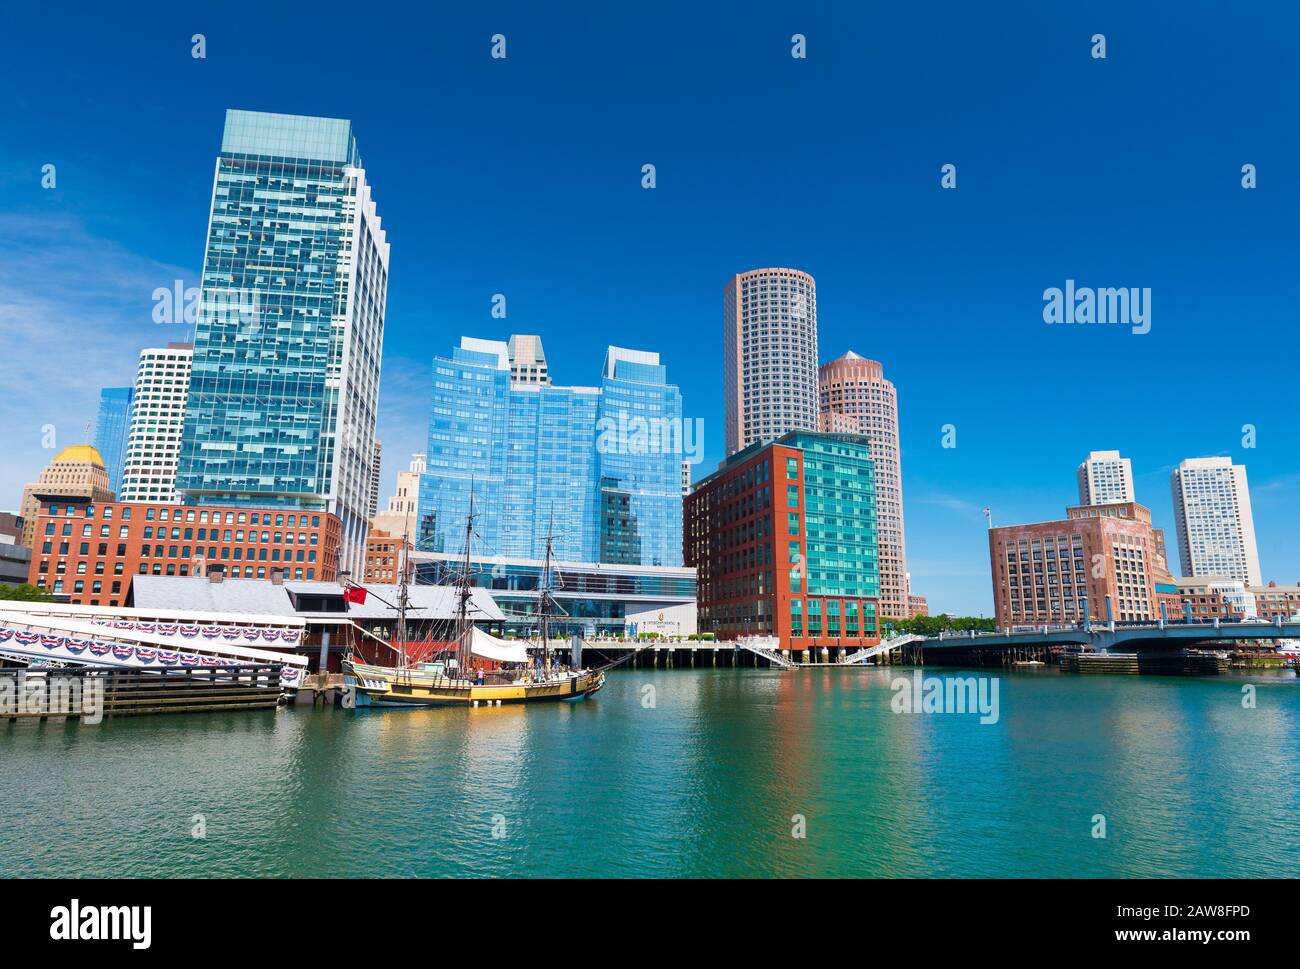 Juin 2016 - Boston, MA, USA : Boston skyline, vieux bateau historique dans la région de Tea Party museum et bâtiments modernes dans le centre-ville de refléter dans l'eau de Boston h Banque D'Images